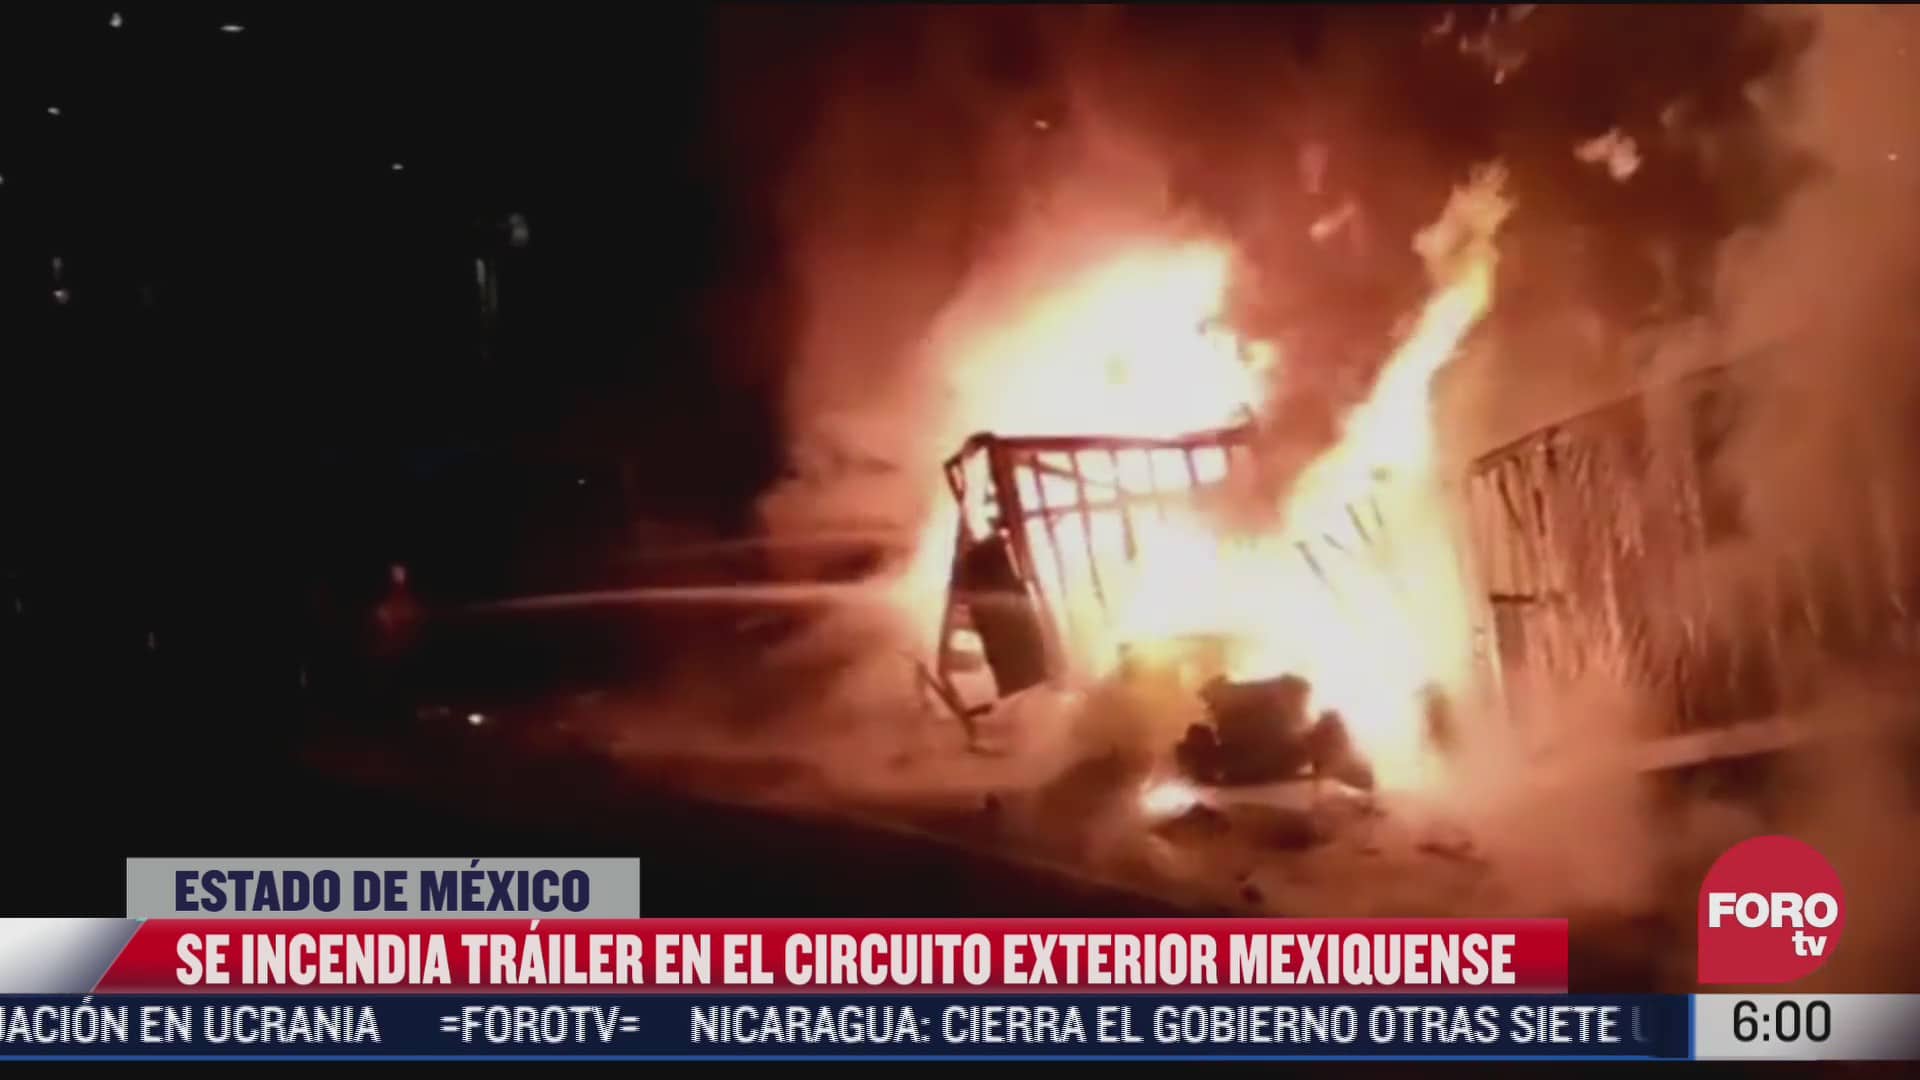 trailer choca contra un arbol y se incendia sobre el circuito exterior mexiquense